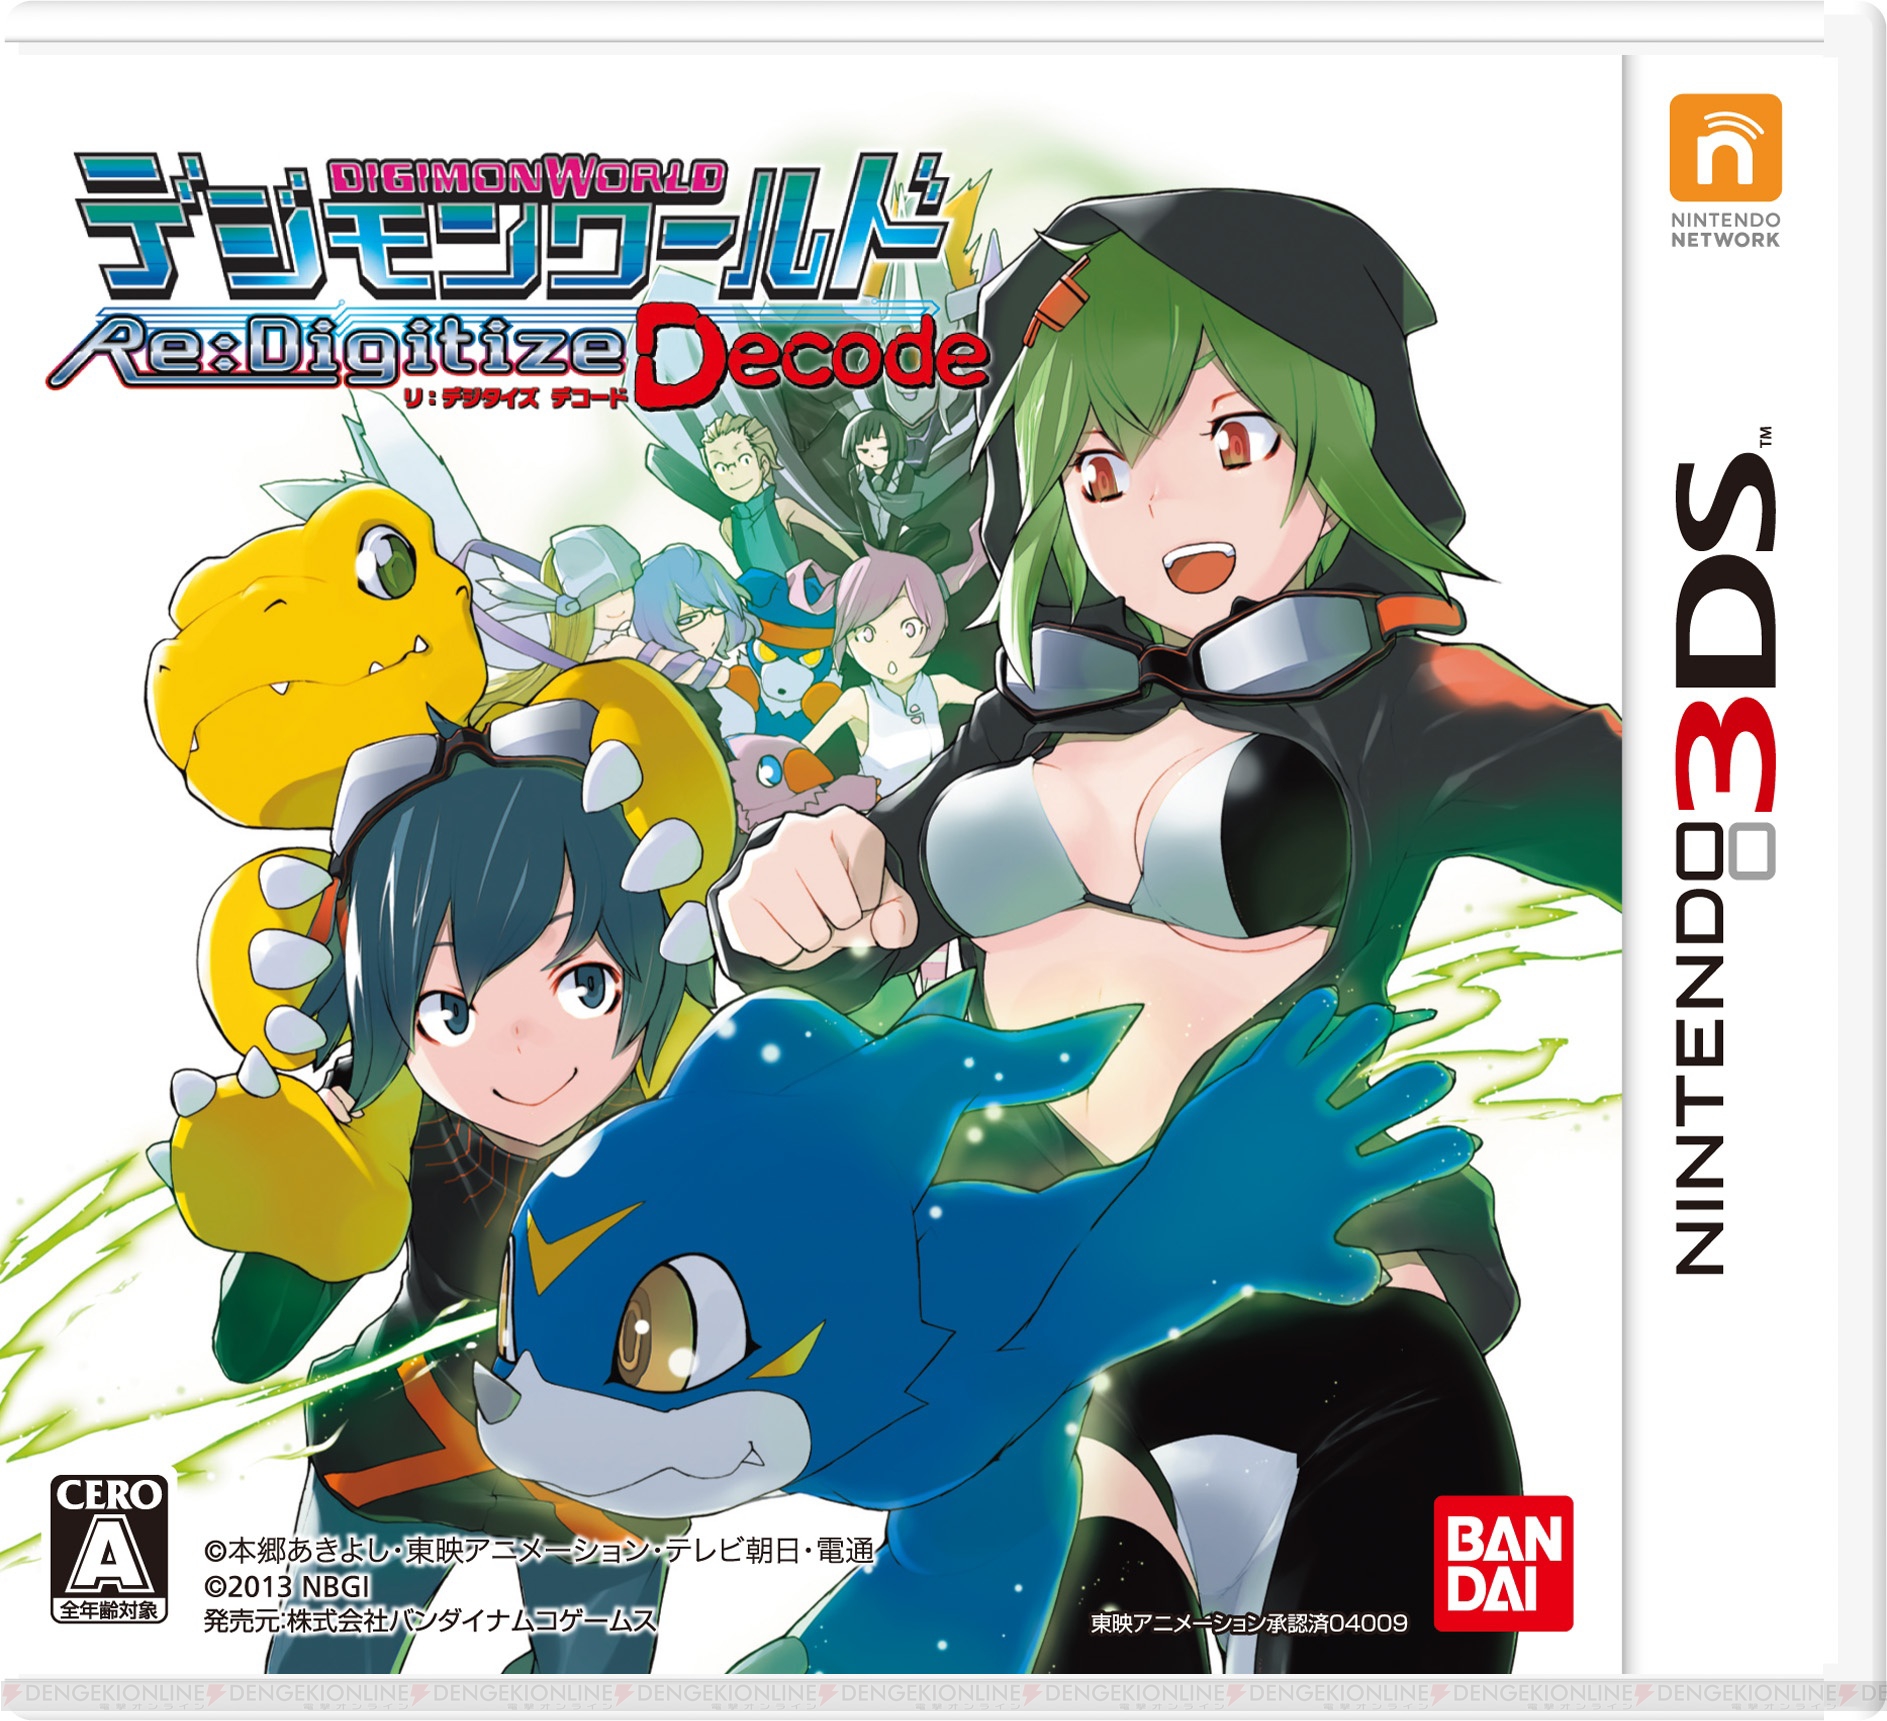 Digimon World Re:Digitze: Decode, Nintendo